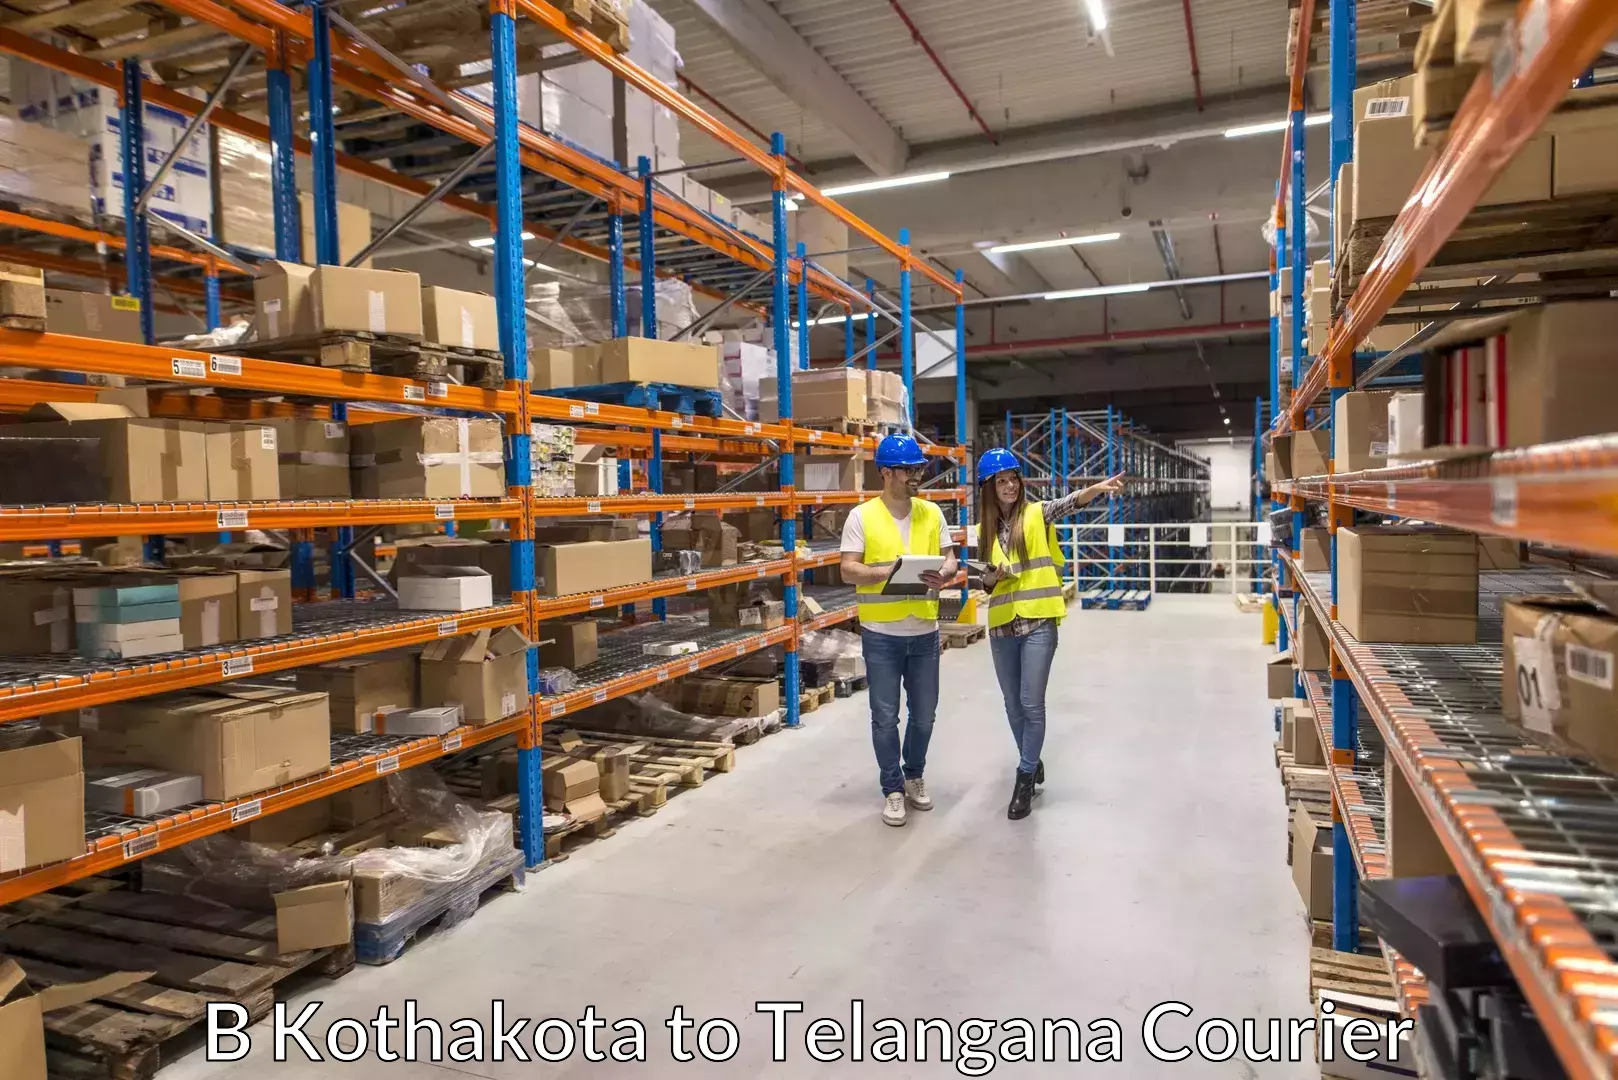 Furniture moving specialists B Kothakota to Telangana